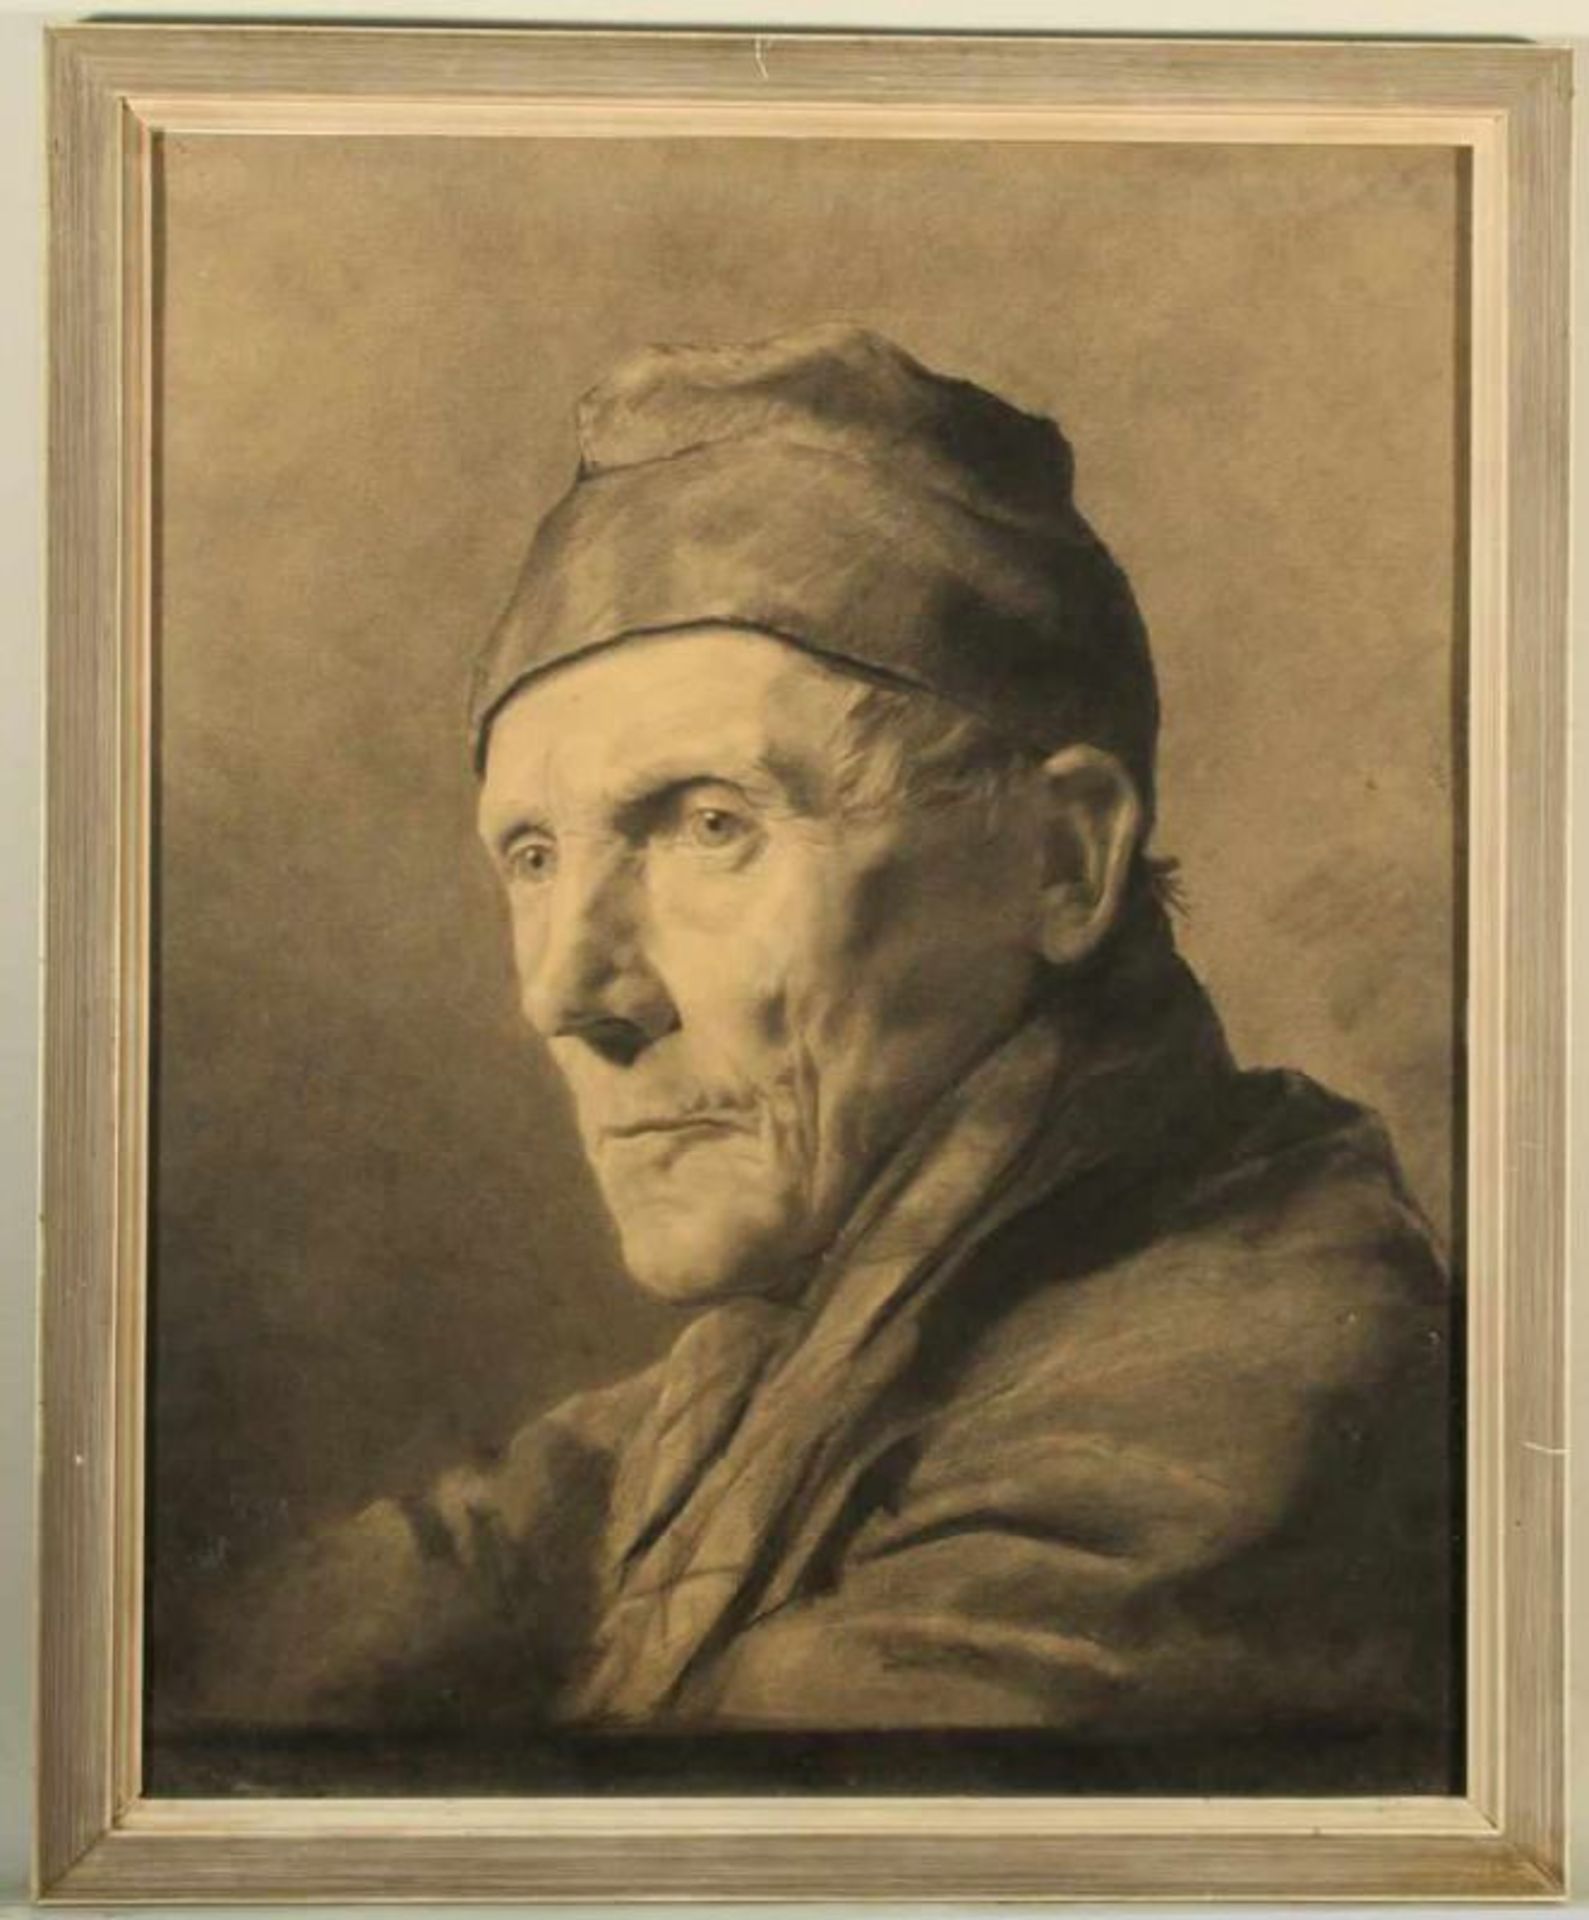 Porträtist (19. Jh.), 2 Kohlezeichnungen, "Frau mit Kopftuch", "Mann mit Kappe", 1x monogrammiert HD - Image 5 of 5